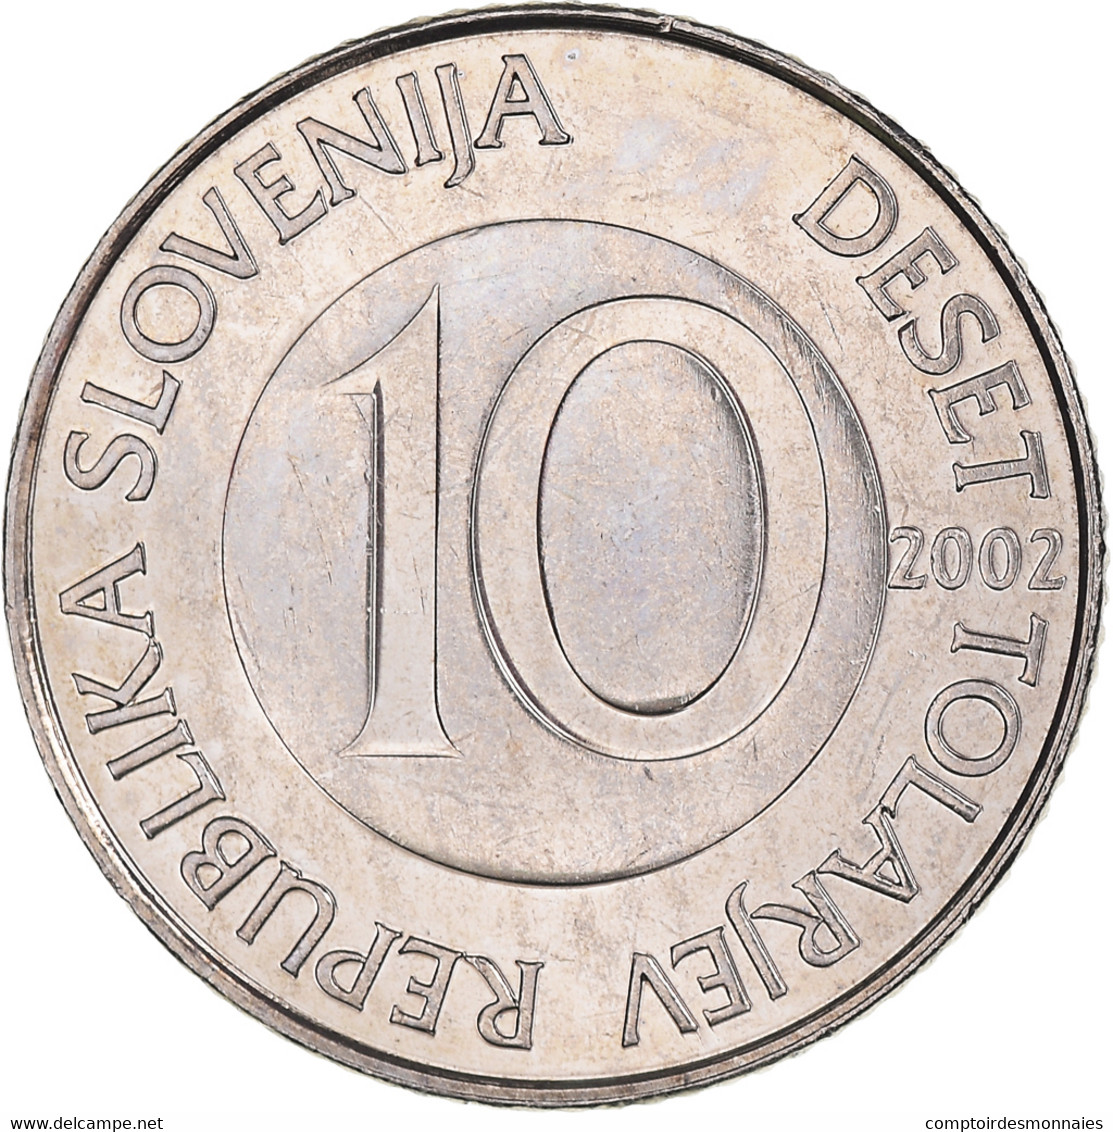 Monnaie, Slovénie, 10 Tolarjev, 2002, Kremnica, FDC, Cupro-nickel, KM:41 - Slovenia